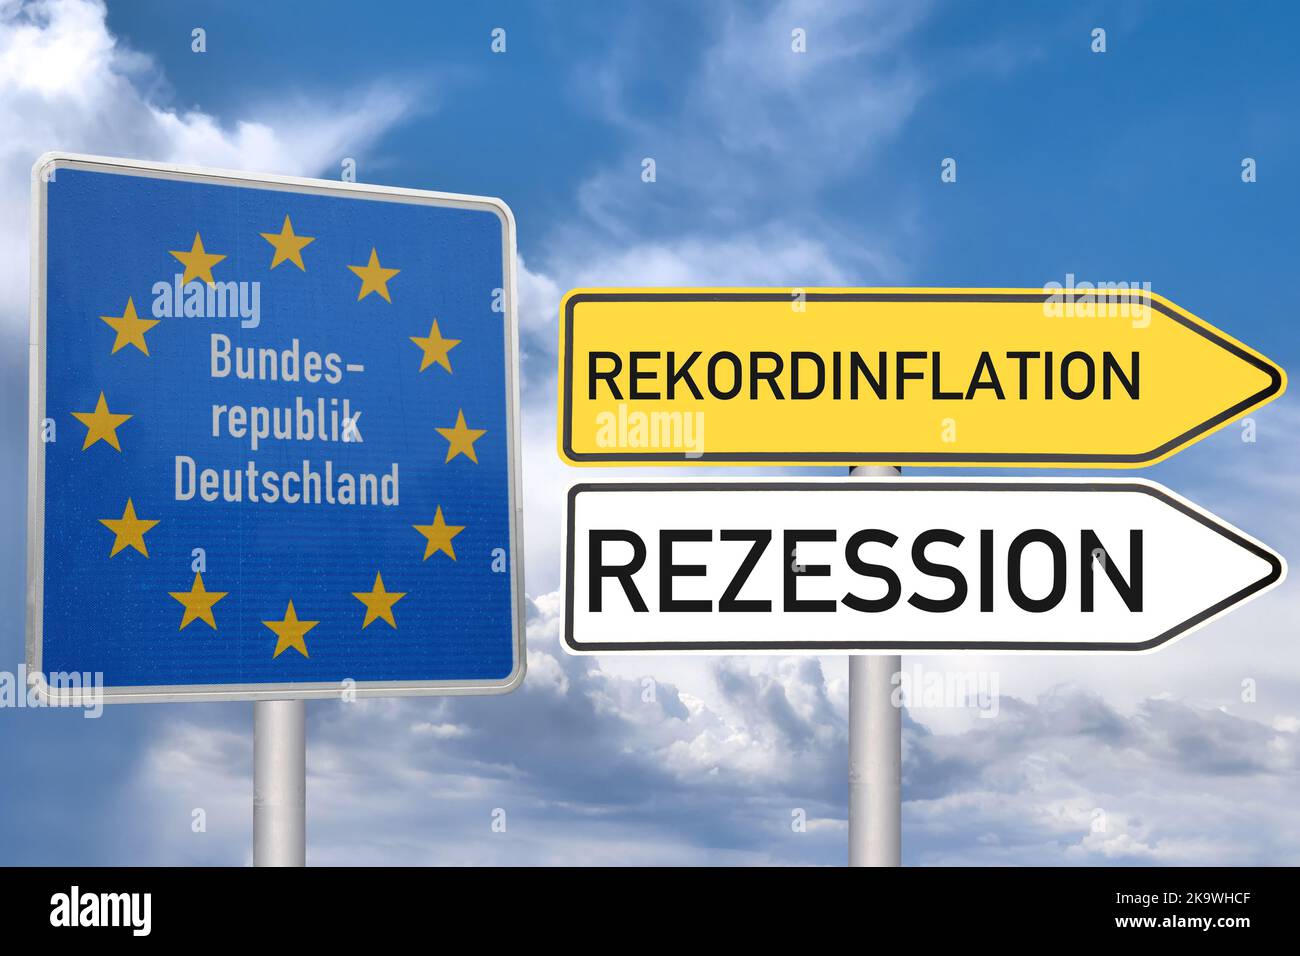 Symbolbild Rezession: Grenzschild der Bundesrepublik Deutschland, daneben zeigen Schilder in Richtung Rekordinflation und Rezession (composizione) Foto Stock